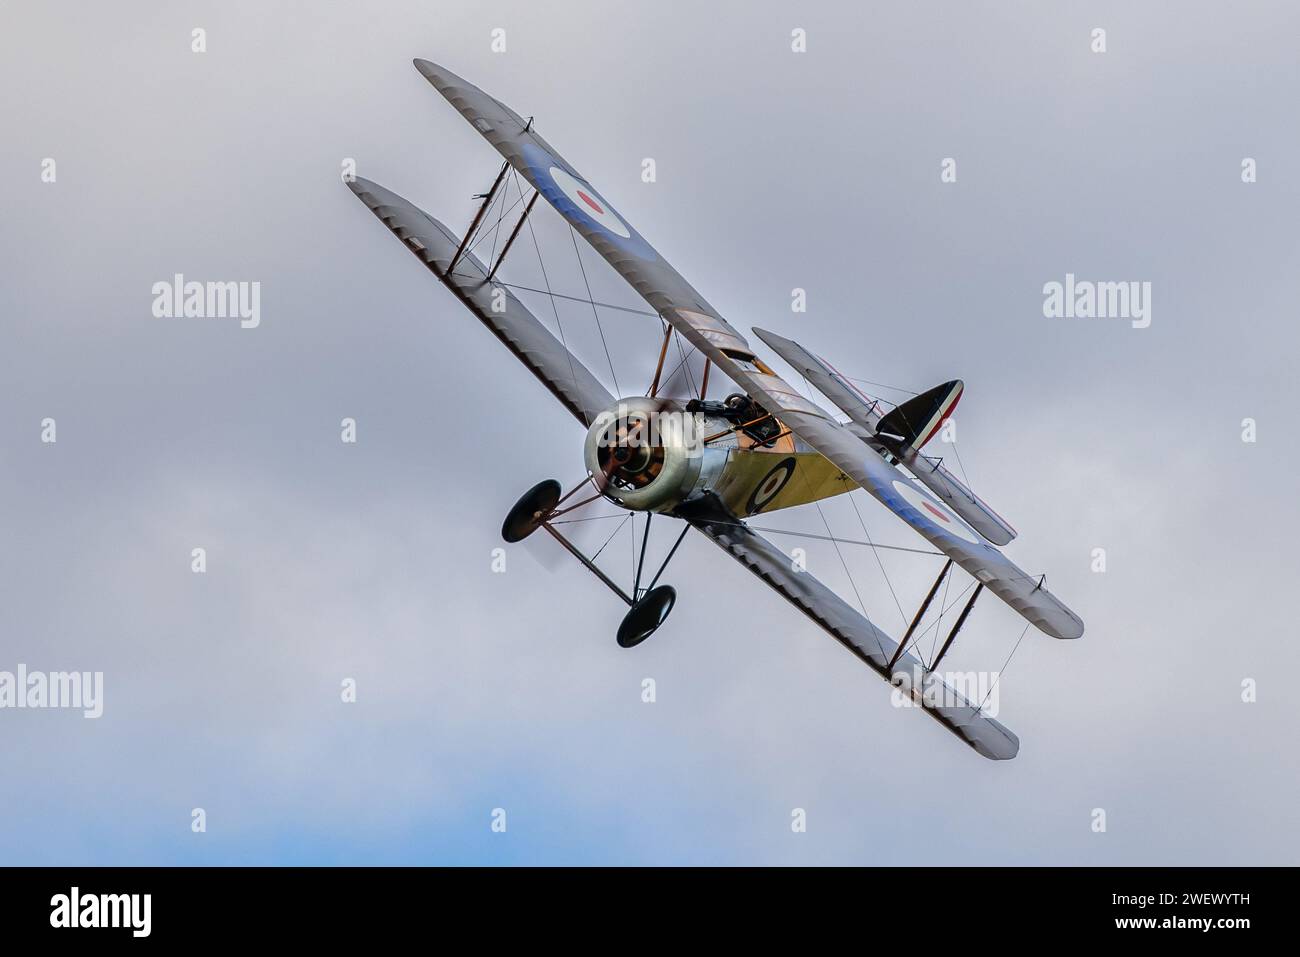 Old Warden, Royaume-Uni - 2 octobre 2022 : Vintage Sopwith Pup biplan en vol à basse altitude au-dessus de l'aérodrome. Gros plan Banque D'Images